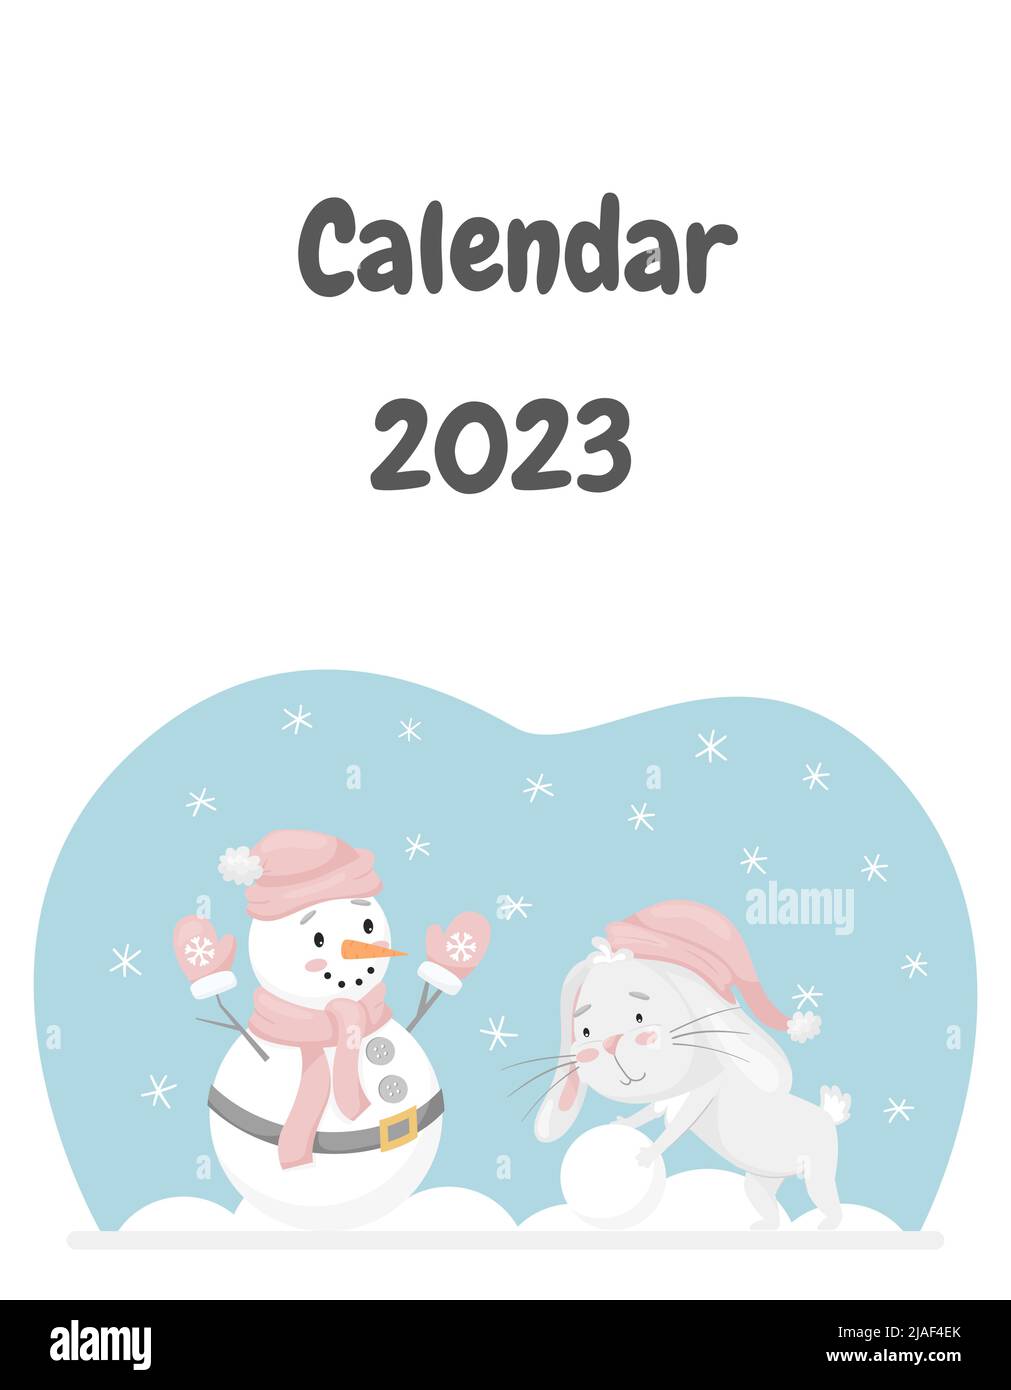 La couverture du calendrier pour 2023 avec un joli lapin, le symbole chinois de l'année. Le lapin roule une boule de neige, fait un bonhomme de neige. Activités amusantes en hiver. C Illustration de Vecteur